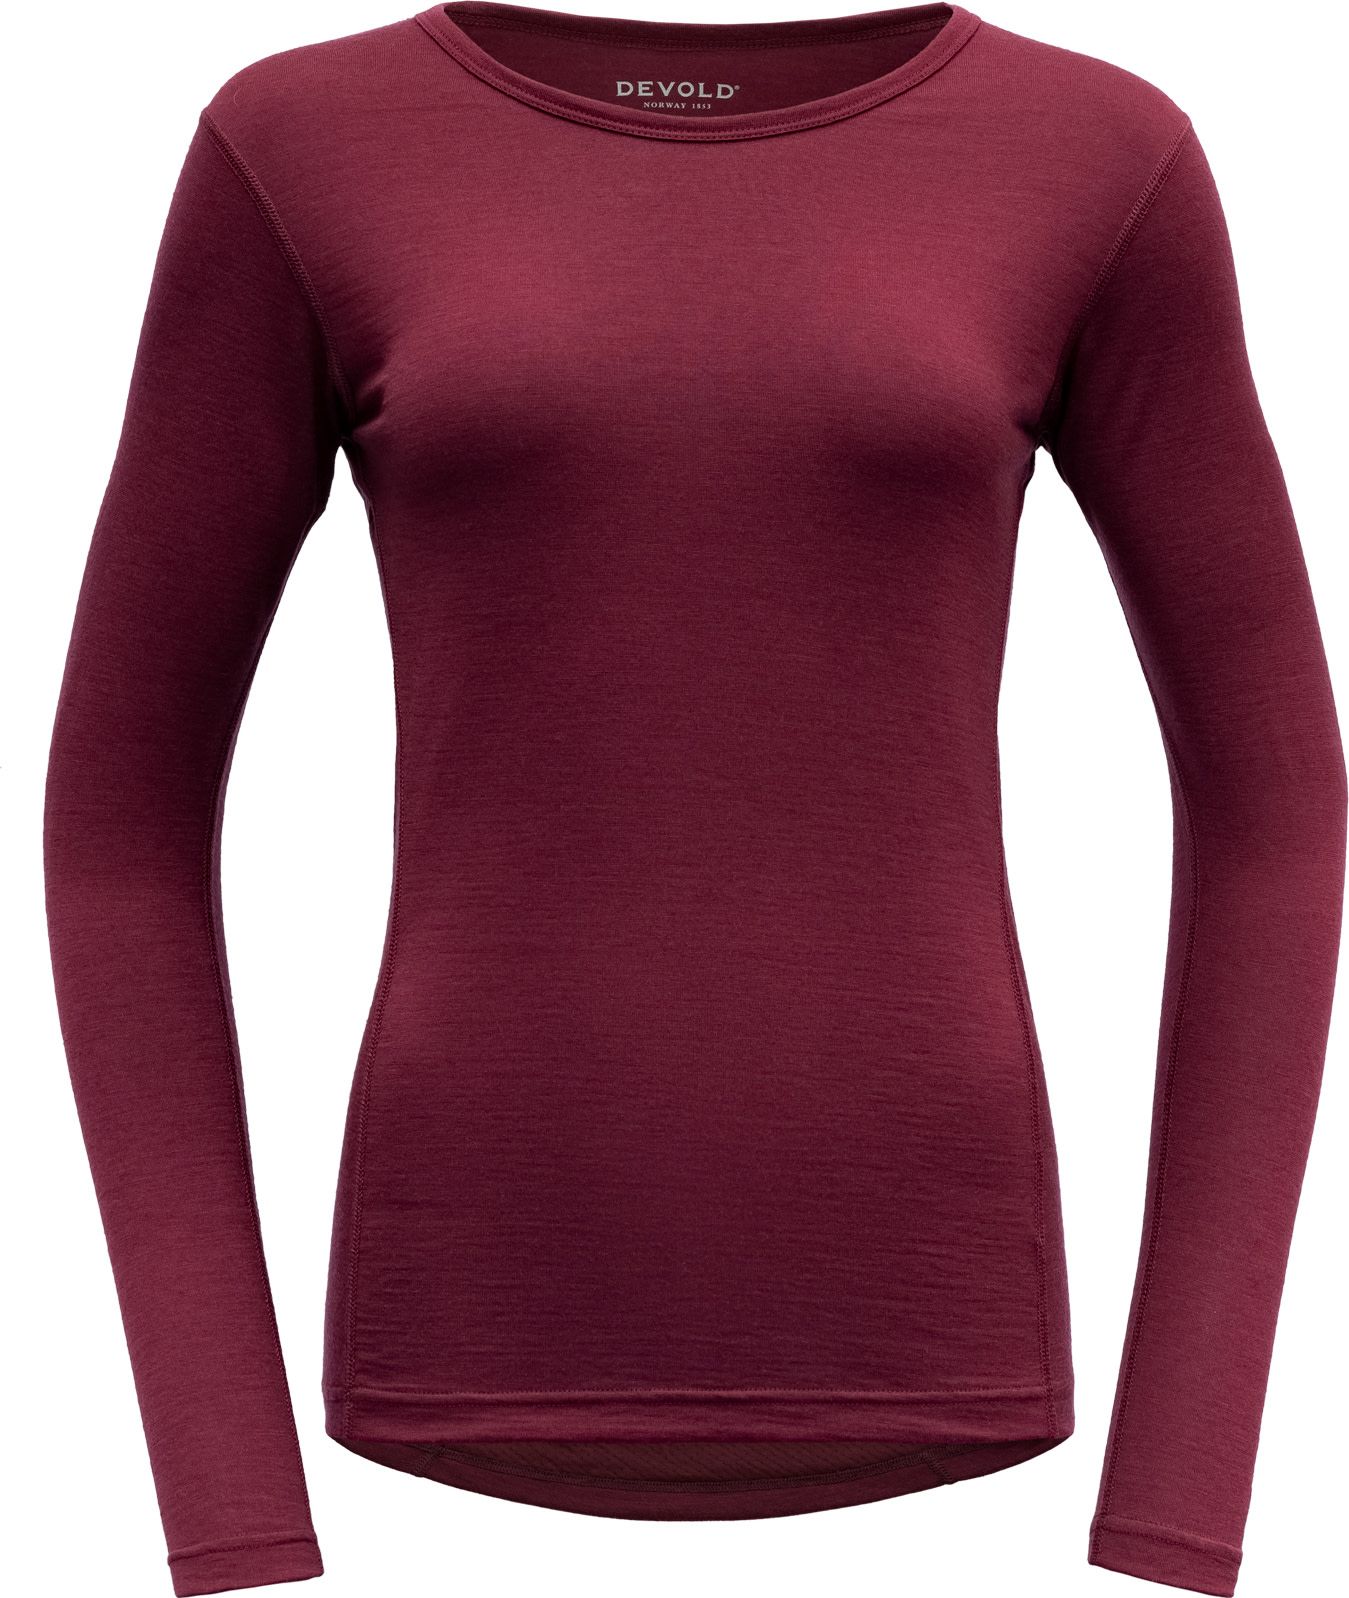 Devold Women's Breeze Shirt Beetroot